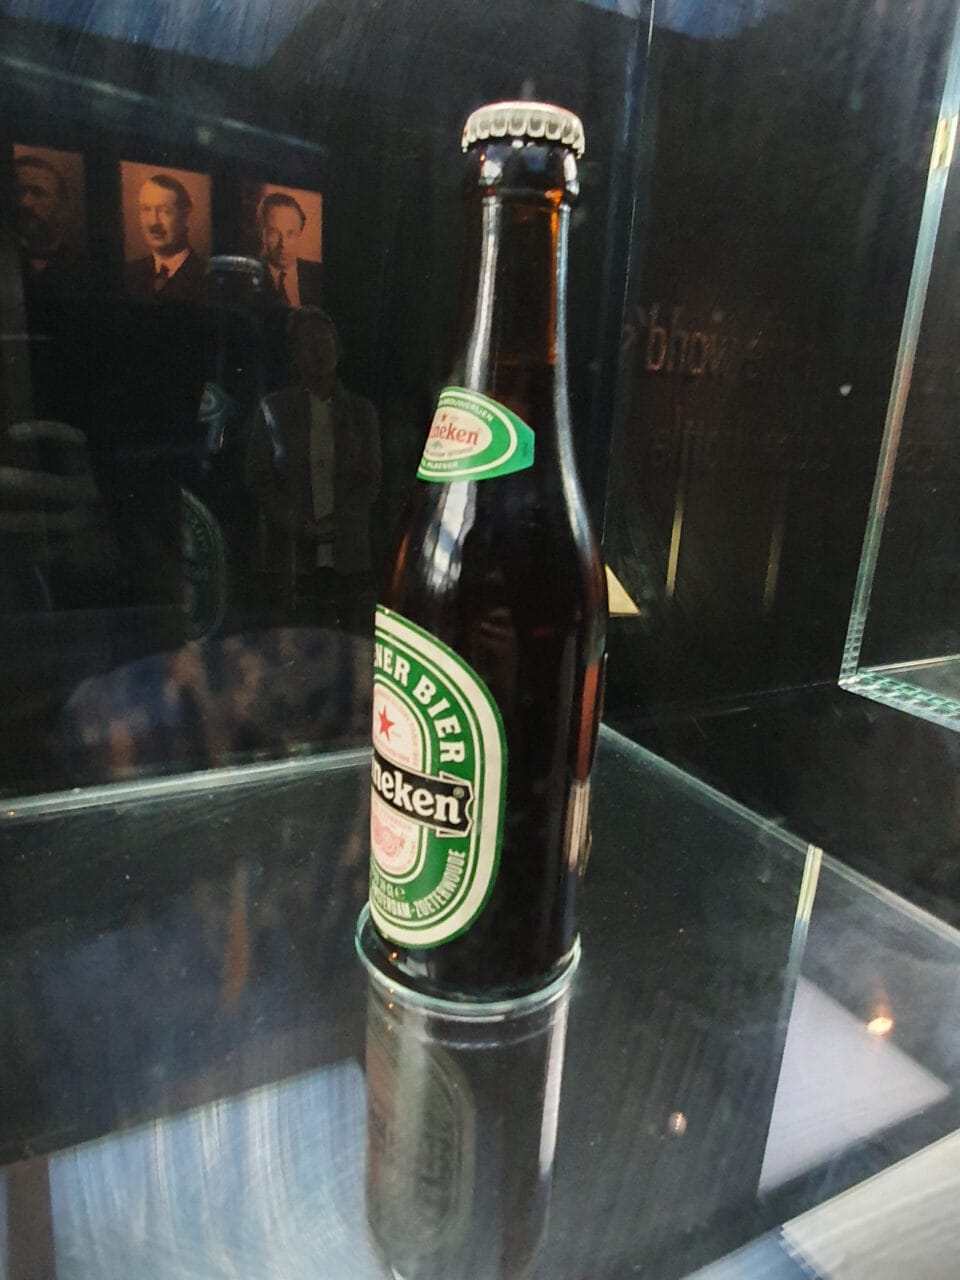 Heineken Experience Ausstellung 24: Alte Bierflasche 4